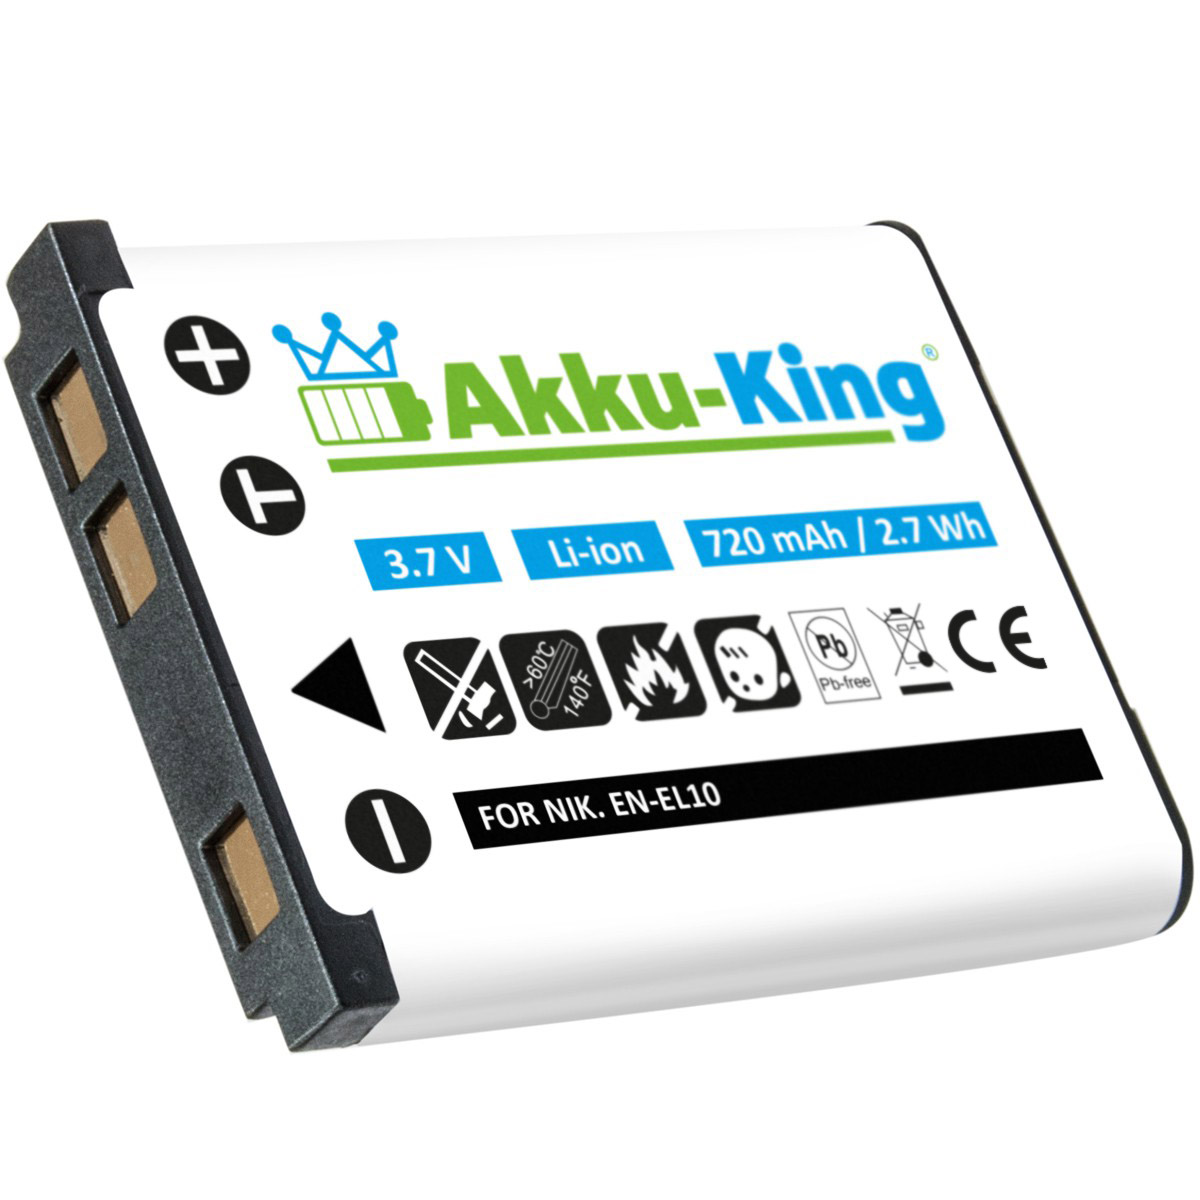 720mAh 3.7 Akku Volt, mit Kamera-Akku, Li-Ion D-Li108 AKKU-KING Pentax kompatibel